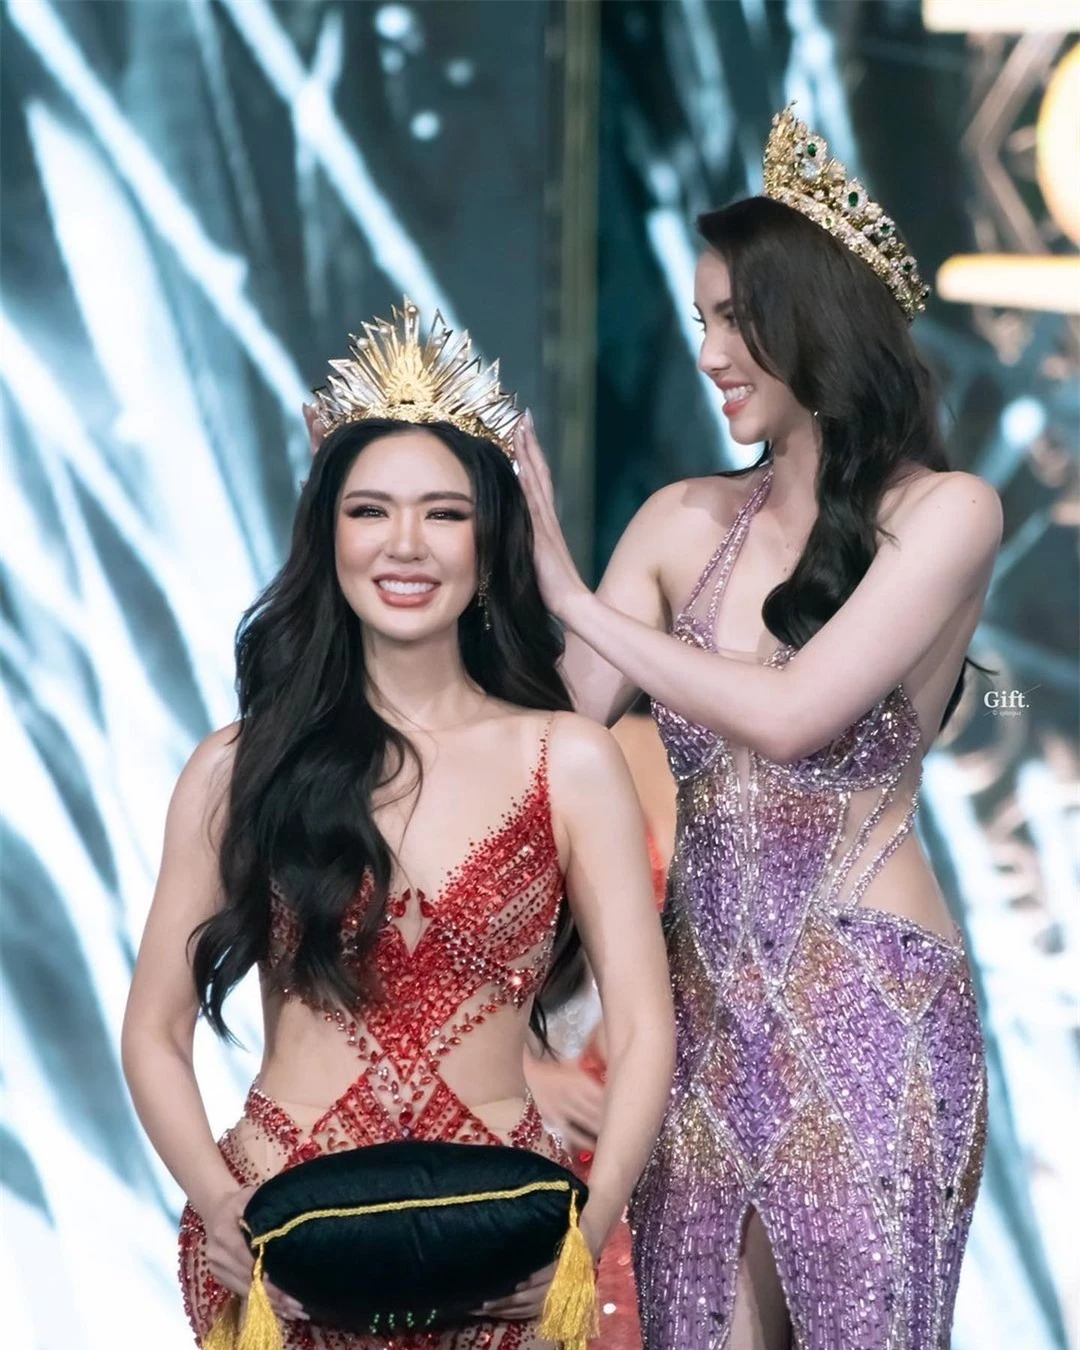 Nhan sắc nóng bỏng của người đẹp lai đăng quang Hoa hậu Hòa bình Phuket ảnh 2